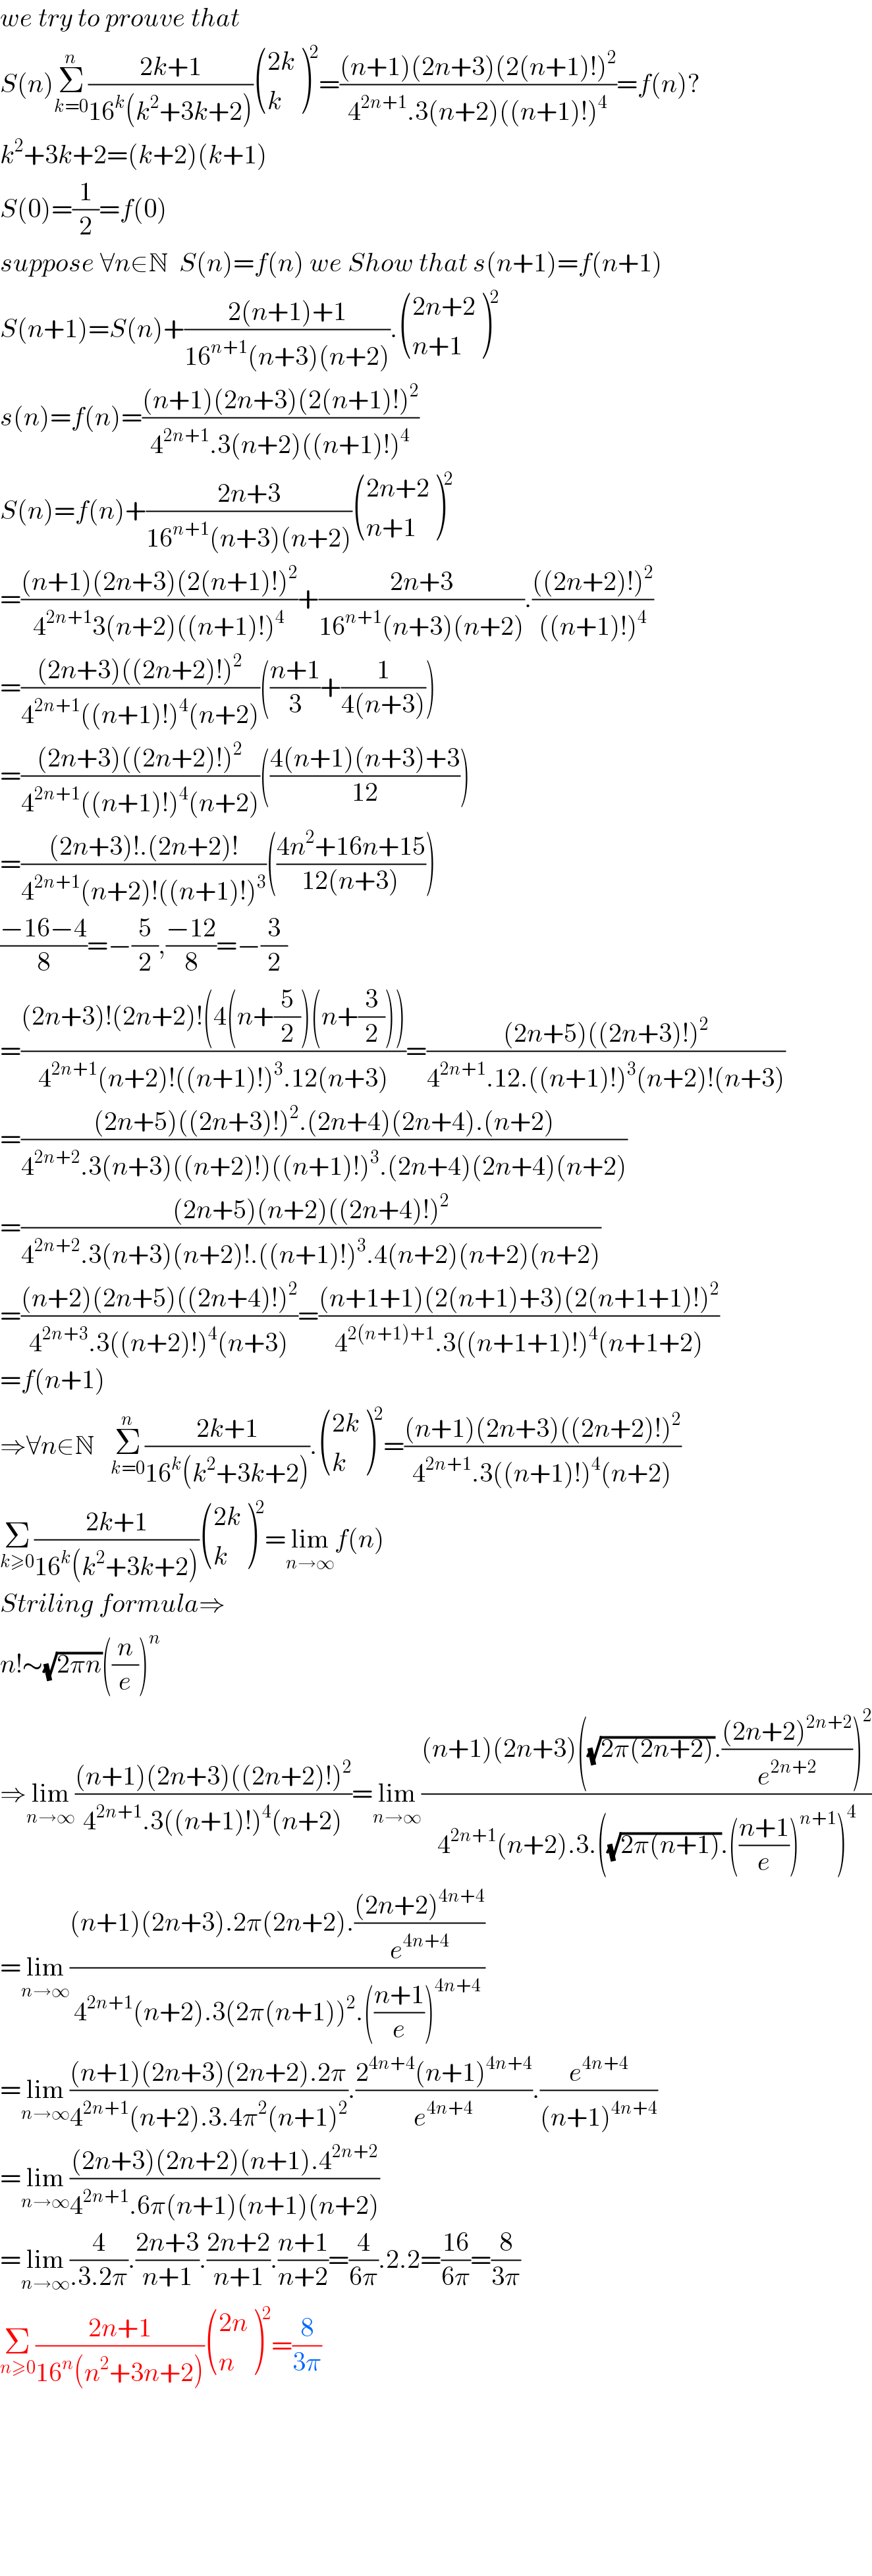 we try to prouve that  S(n)Σ_(k=0) ^n ((2k+1)/(16^k (k^2 +3k+2))) (((2k)),(k) )^2 =(((n+1)(2n+3)(2(n+1)!)^2 )/(4^(2n+1) .3(n+2)((n+1)!)^4 ))=f(n)?  k^2 +3k+2=(k+2)(k+1)  S(0)=(1/2)=f(0)  suppose ∀n∈N  S(n)=f(n) we Show that s(n+1)=f(n+1)  S(n+1)=S(n)+((2(n+1)+1)/(16^(n+1) (n+3)(n+2))). (((2n+2)),((n+1)) )^2   s(n)=f(n)=(((n+1)(2n+3)(2(n+1)!)^2 )/(4^(2n+1) .3(n+2)((n+1)!)^4 ))  S(n)=f(n)+((2n+3)/(16^(n+1) (n+3)(n+2))) (((2n+2)),((n+1)) )^2   =(((n+1)(2n+3)(2(n+1)!)^2 )/(4^(2n+1) 3(n+2)((n+1)!)^4 ))+((2n+3)/(16^(n+1) (n+3)(n+2))).((((2n+2)!)^2 )/(((n+1)!)^4 ))  =(((2n+3)((2n+2)!)^2 )/(4^(2n+1) ((n+1)!)^4 (n+2)))(((n+1)/3)+(1/(4(n+3))))  =(((2n+3)((2n+2)!)^2 )/(4^(2n+1) ((n+1)!)^4 (n+2)))(((4(n+1)(n+3)+3)/(12)))  =(((2n+3)!.(2n+2)!)/(4^(2n+1) (n+2)!((n+1)!)^3 ))(((4n^2 +16n+15)/(12(n+3))))  ((−16−4)/8)=−(5/2),((−12)/8)=−(3/2)  =(((2n+3)!(2n+2)!(4(n+(5/2))(n+(3/2))))/(4^(2n+1) (n+2)!((n+1)!)^3 .12(n+3)))=(((2n+5)((2n+3)!)^2 )/(4^(2n+1) .12.((n+1)!)^3 (n+2)!(n+3)))  =(((2n+5)((2n+3)!)^2 .(2n+4)(2n+4).(n+2))/(4^(2n+2) .3(n+3)((n+2)!)((n+1)!)^3 .(2n+4)(2n+4)(n+2)))  =(((2n+5)(n+2)((2n+4)!)^2 )/(4^(2n+2) .3(n+3)(n+2)!.((n+1)!)^3 .4(n+2)(n+2)(n+2)))  =(((n+2)(2n+5)((2n+4)!)^2 )/(4^(2n+3) .3((n+2)!)^4 (n+3)))=(((n+1+1)(2(n+1)+3)(2(n+1+1)!)^2 )/(4^(2(n+1)+1) .3((n+1+1)!)^4 (n+1+2)))  =f(n+1)  ⇒∀n∈N   Σ_(k=0) ^n ((2k+1)/(16^k (k^2 +3k+2))). (((2k)),(k) )^2 =(((n+1)(2n+3)((2n+2)!)^2 )/(4^(2n+1) .3((n+1)!)^4 (n+2)))  Σ_(k≥0) ((2k+1)/(16^k (k^2 +3k+2))) (((2k)),(k) )^2 =lim_(n→∞) f(n)  Striling formula⇒  n!∼(√(2πn))((n/e))^n   ⇒lim_(n→∞) (((n+1)(2n+3)((2n+2)!)^2 )/(4^(2n+1) .3((n+1)!)^4 (n+2)))=lim_(n→∞) (((n+1)(2n+3)((√(2π(2n+2))).(((2n+2)^(2n+2) )/e^(2n+2) ))^2 )/(4^(2n+1) (n+2).3.((√(2π(n+1))).(((n+1)/e))^(n+1) )^4 ))  =lim_(n→∞) (((n+1)(2n+3).2π(2n+2).(((2n+2)^(4n+4) )/e^(4n+4) ))/(4^(2n+1) (n+2).3(2π(n+1))^2 .(((n+1)/e))^(4n+4) ))  =lim_(n→∞) (((n+1)(2n+3)(2n+2).2π)/(4^(2n+1) (n+2).3.4π^2 (n+1)^2 )).((2^(4n+4) (n+1)^(4n+4) )/e^(4n+4) ).(e^(4n+4) /((n+1)^(4n+4) ))  =lim_(n→∞) (((2n+3)(2n+2)(n+1).4^(2n+2) )/(4^(2n+1) .6π(n+1)(n+1)(n+2)))  =lim_(n→∞) (4/(.3.2π)).((2n+3)/(n+1)).((2n+2)/(n+1)).((n+1)/(n+2))=(4/(6π)).2.2=((16)/(6π))=(8/(3π))  Σ_(n≥0) ((2n+1)/(16^n (n^2 +3n+2))) (((2n)),(n) )^2 =(8/(3π))            